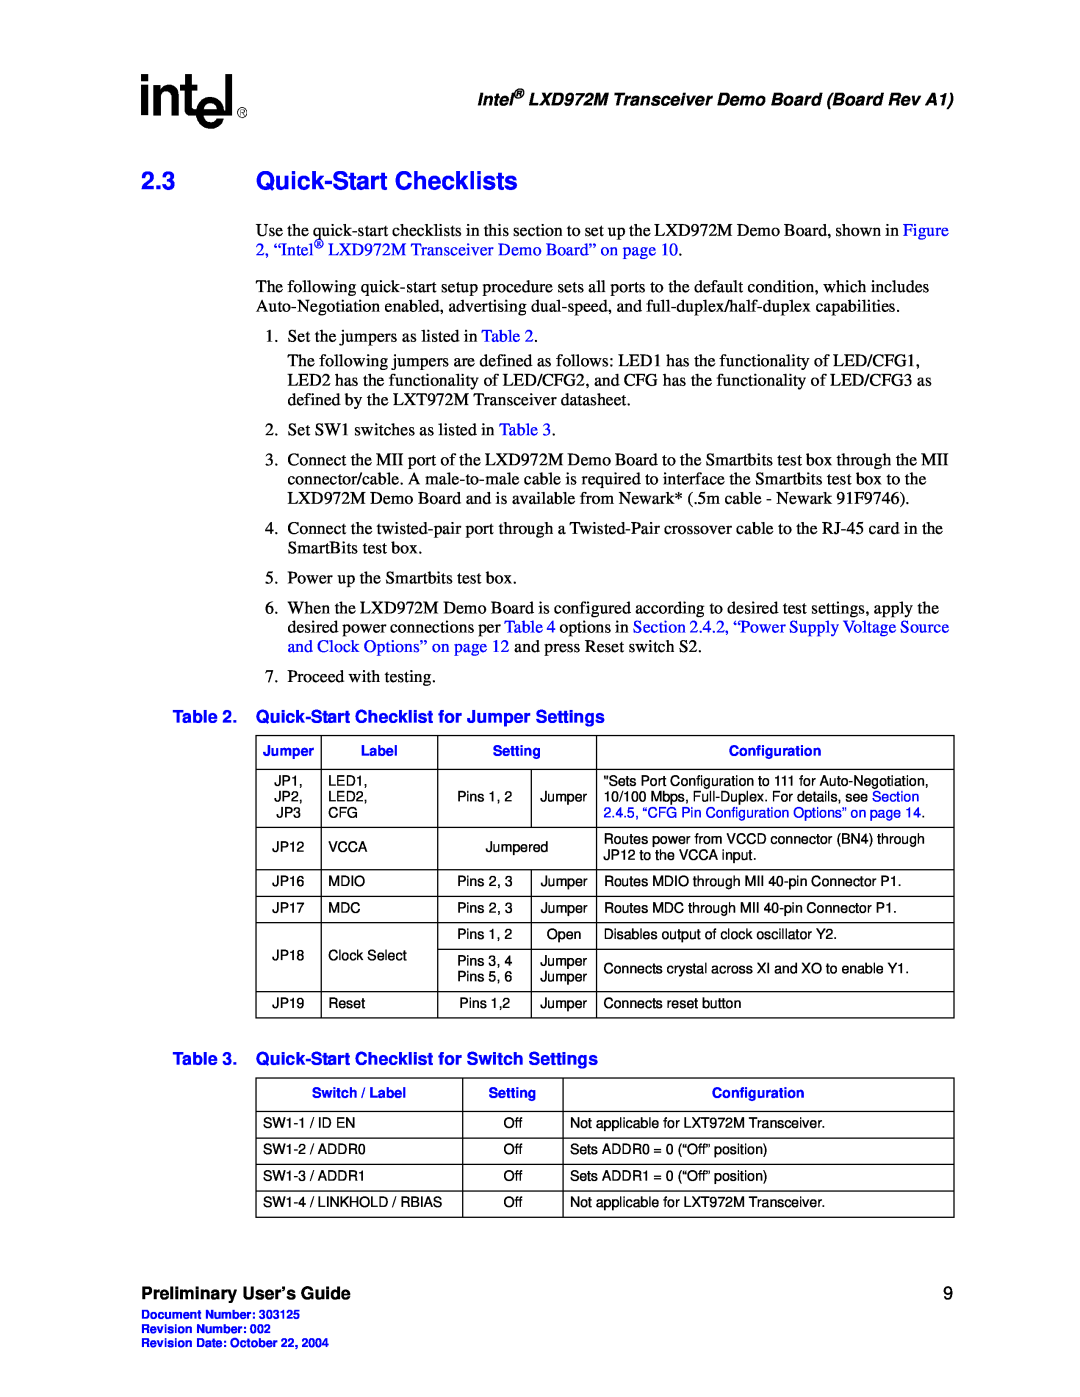 Intel manual 2.3Quick-StartChecklists, Intel LXD972M Transceiver Demo Board Board Rev A1, Preliminary User’s Guide 